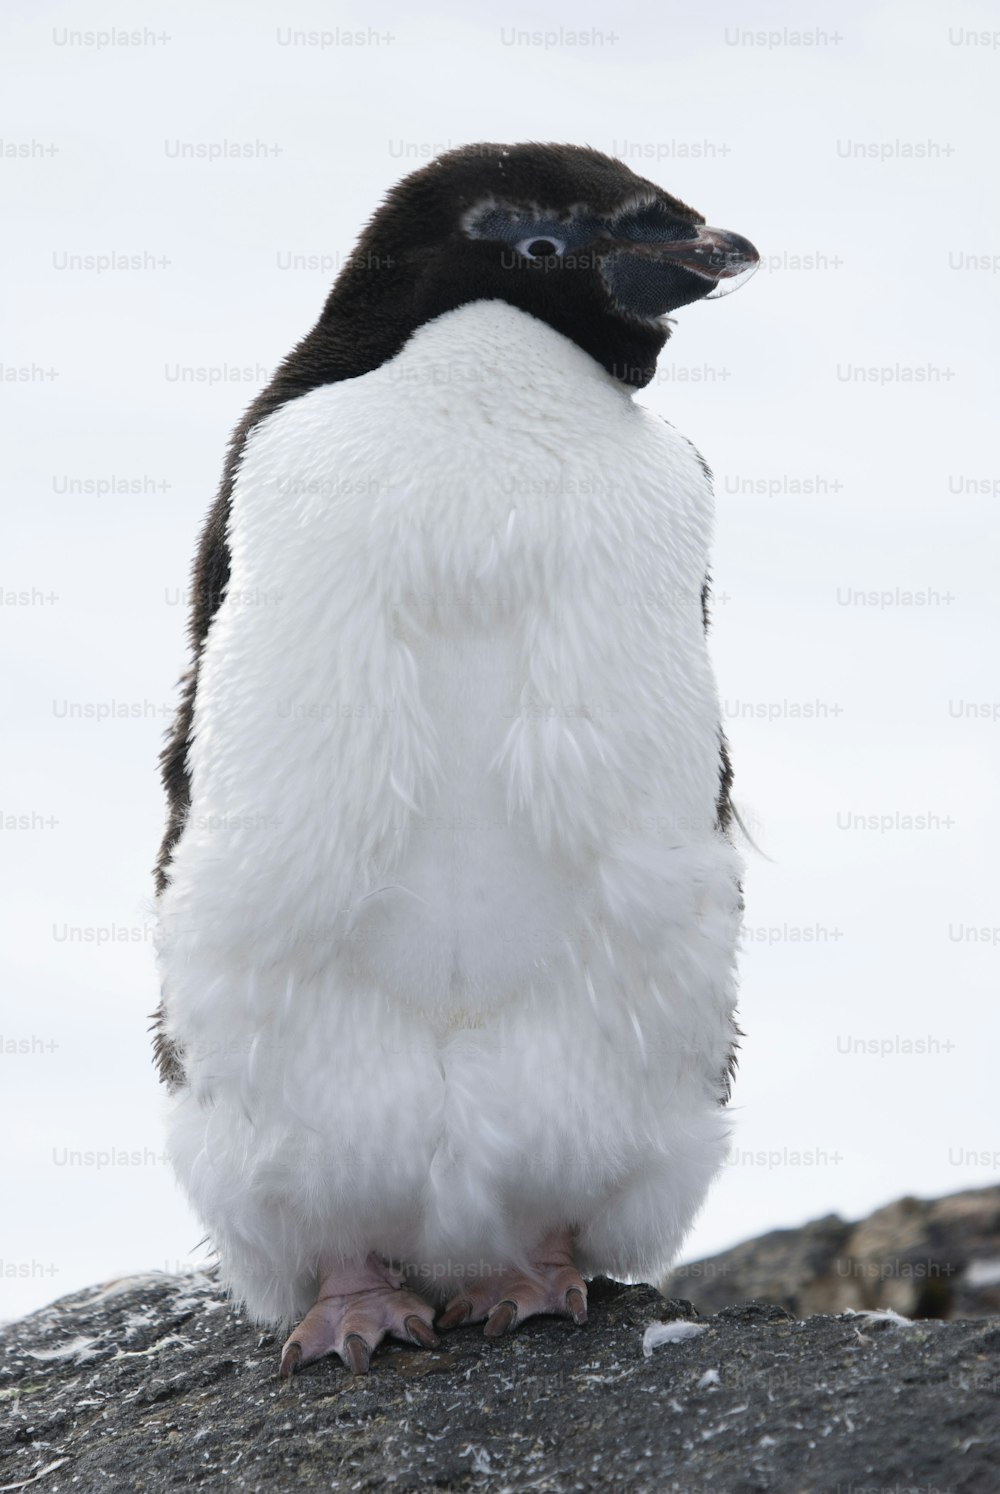 Un pinguino di Adelie nella penisola antartica